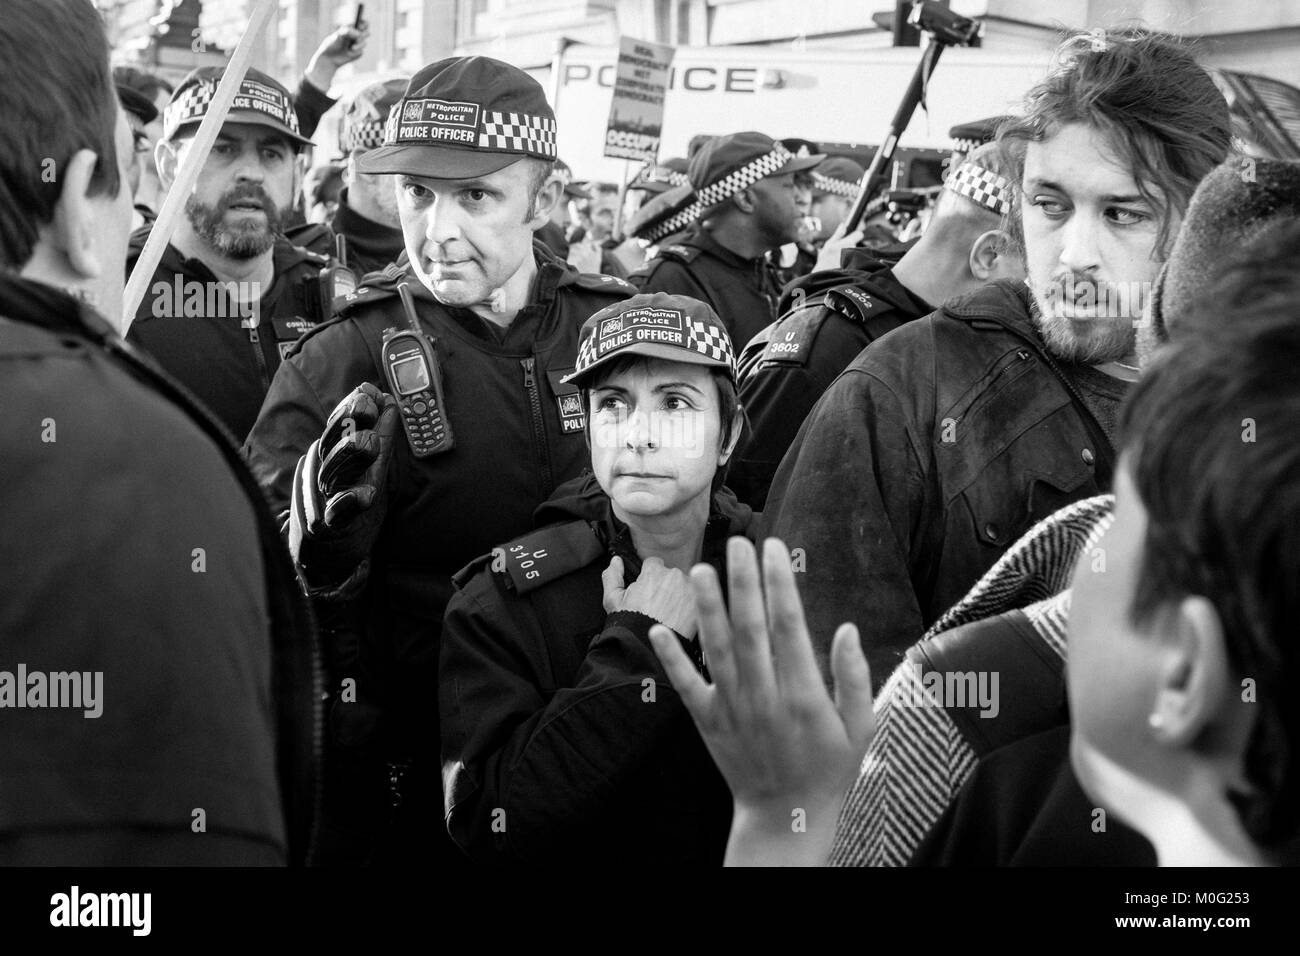 Fotografia di strada in bianco e nero a Londra: Gli ufficiali della polizia metropolitana si confrontano con i manifestanti durante la marcia di protesta nel centro di Londra. Foto Stock